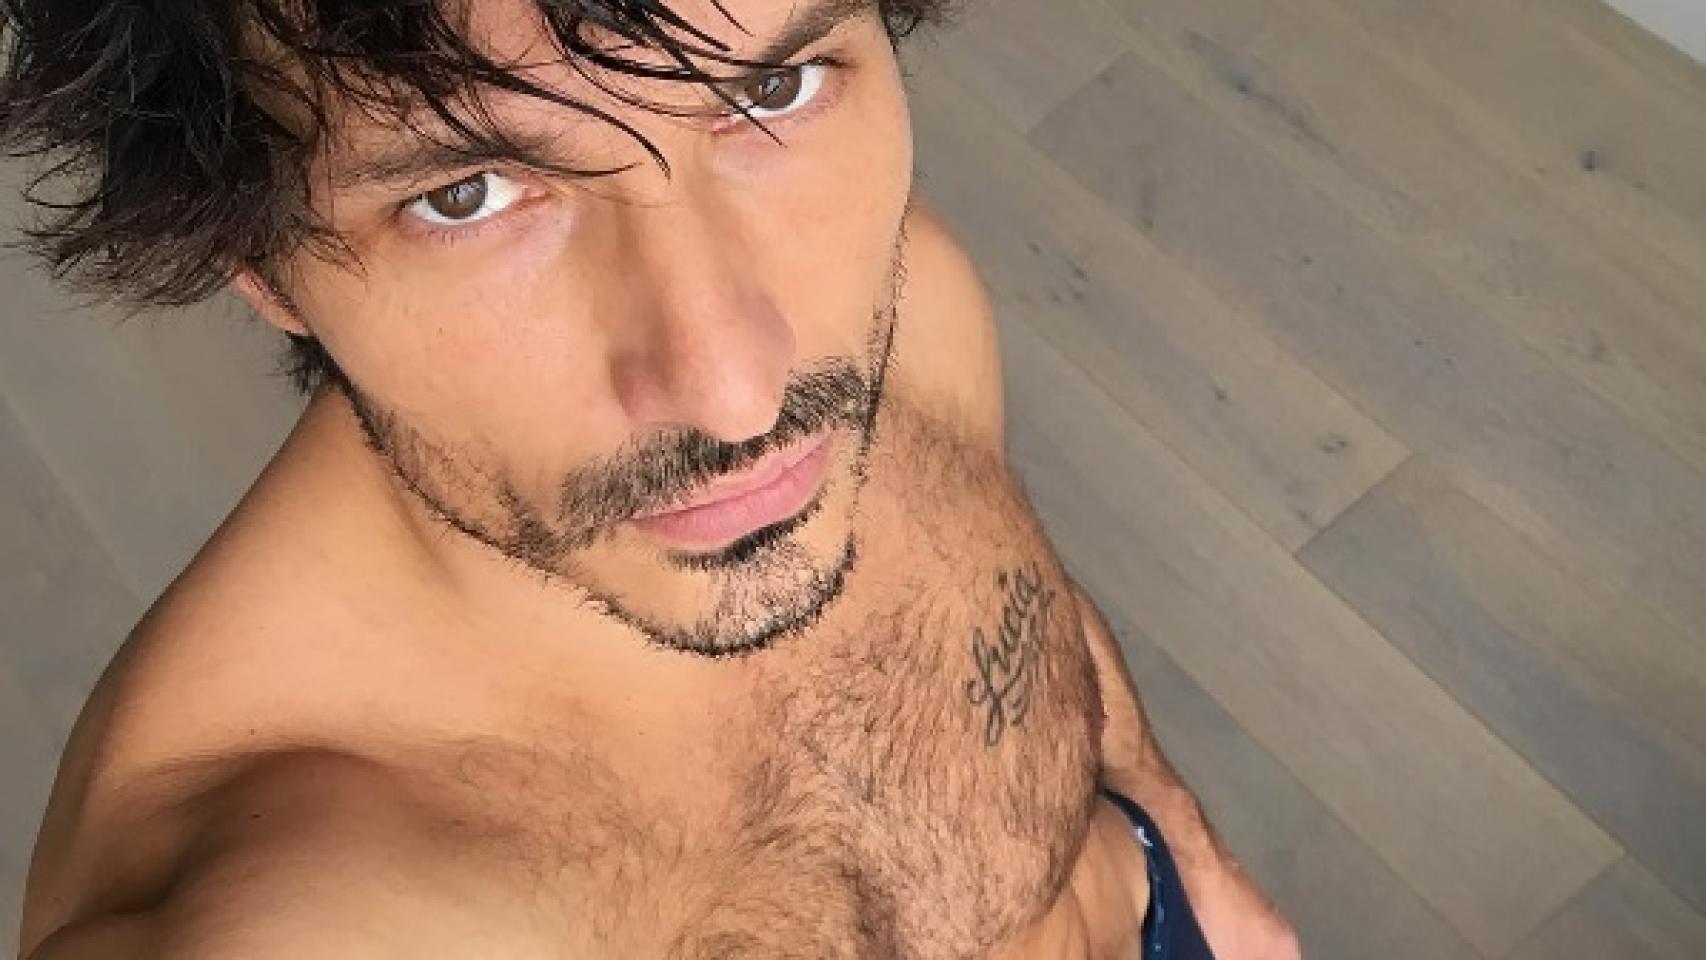 Andrés Velencoso desafía al frío. El modelo se pasea cómodo por su casa y quiere mostrarlo a sus seguidores de Instagram. Así, vestido solo con unos boxer azul marino da los buenos días a sus fans.